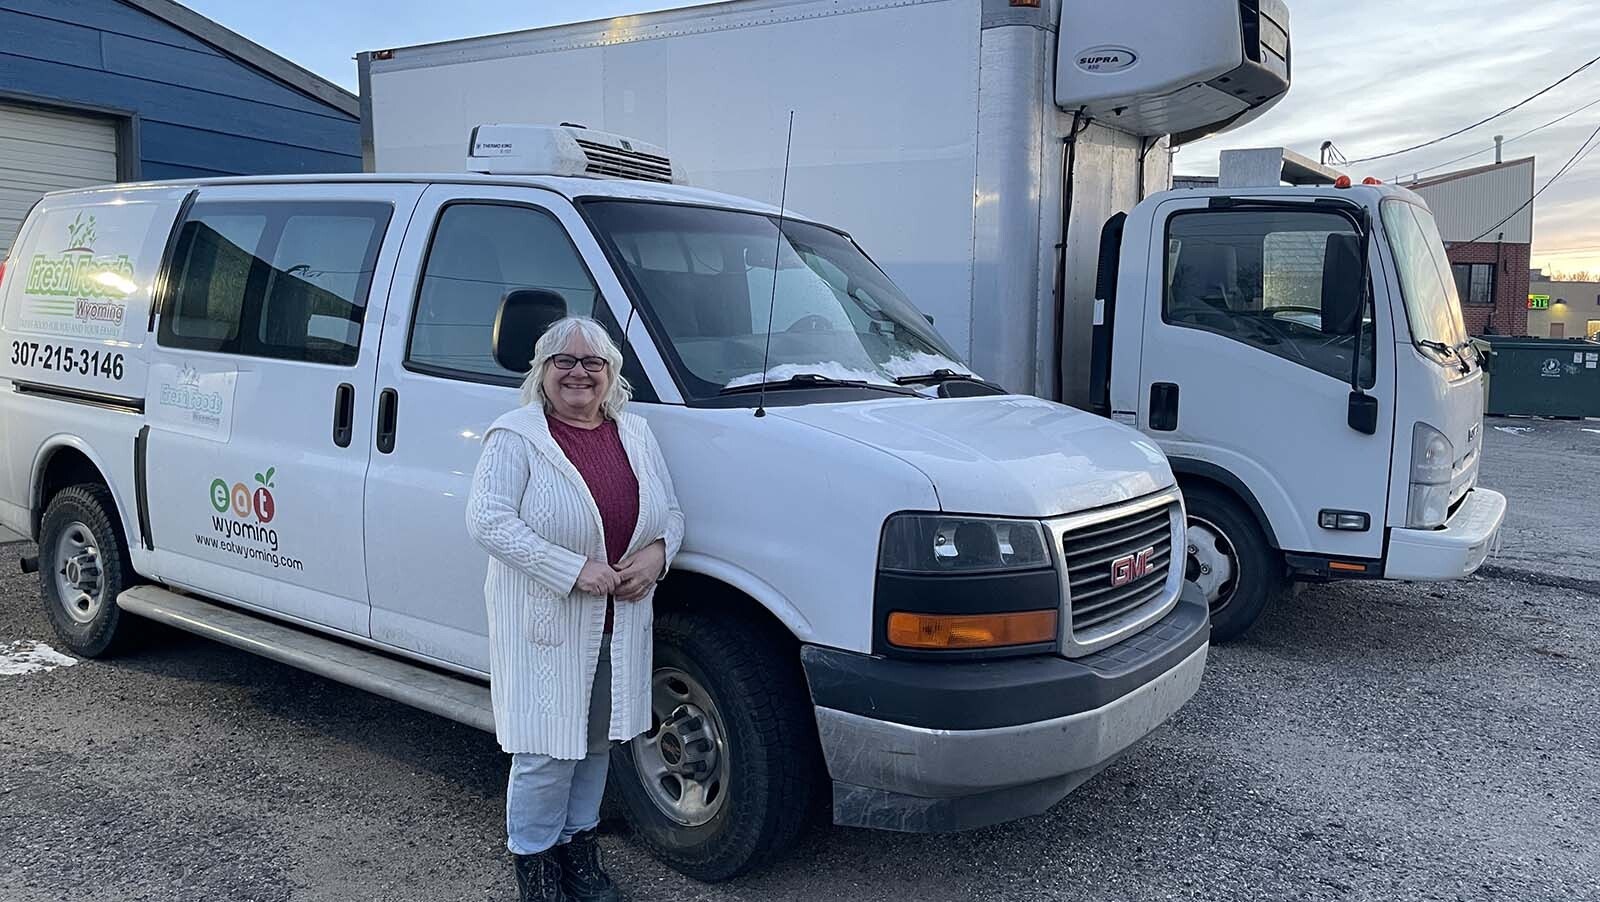 LeAnn Miller in front of an Eat Wyoming van.